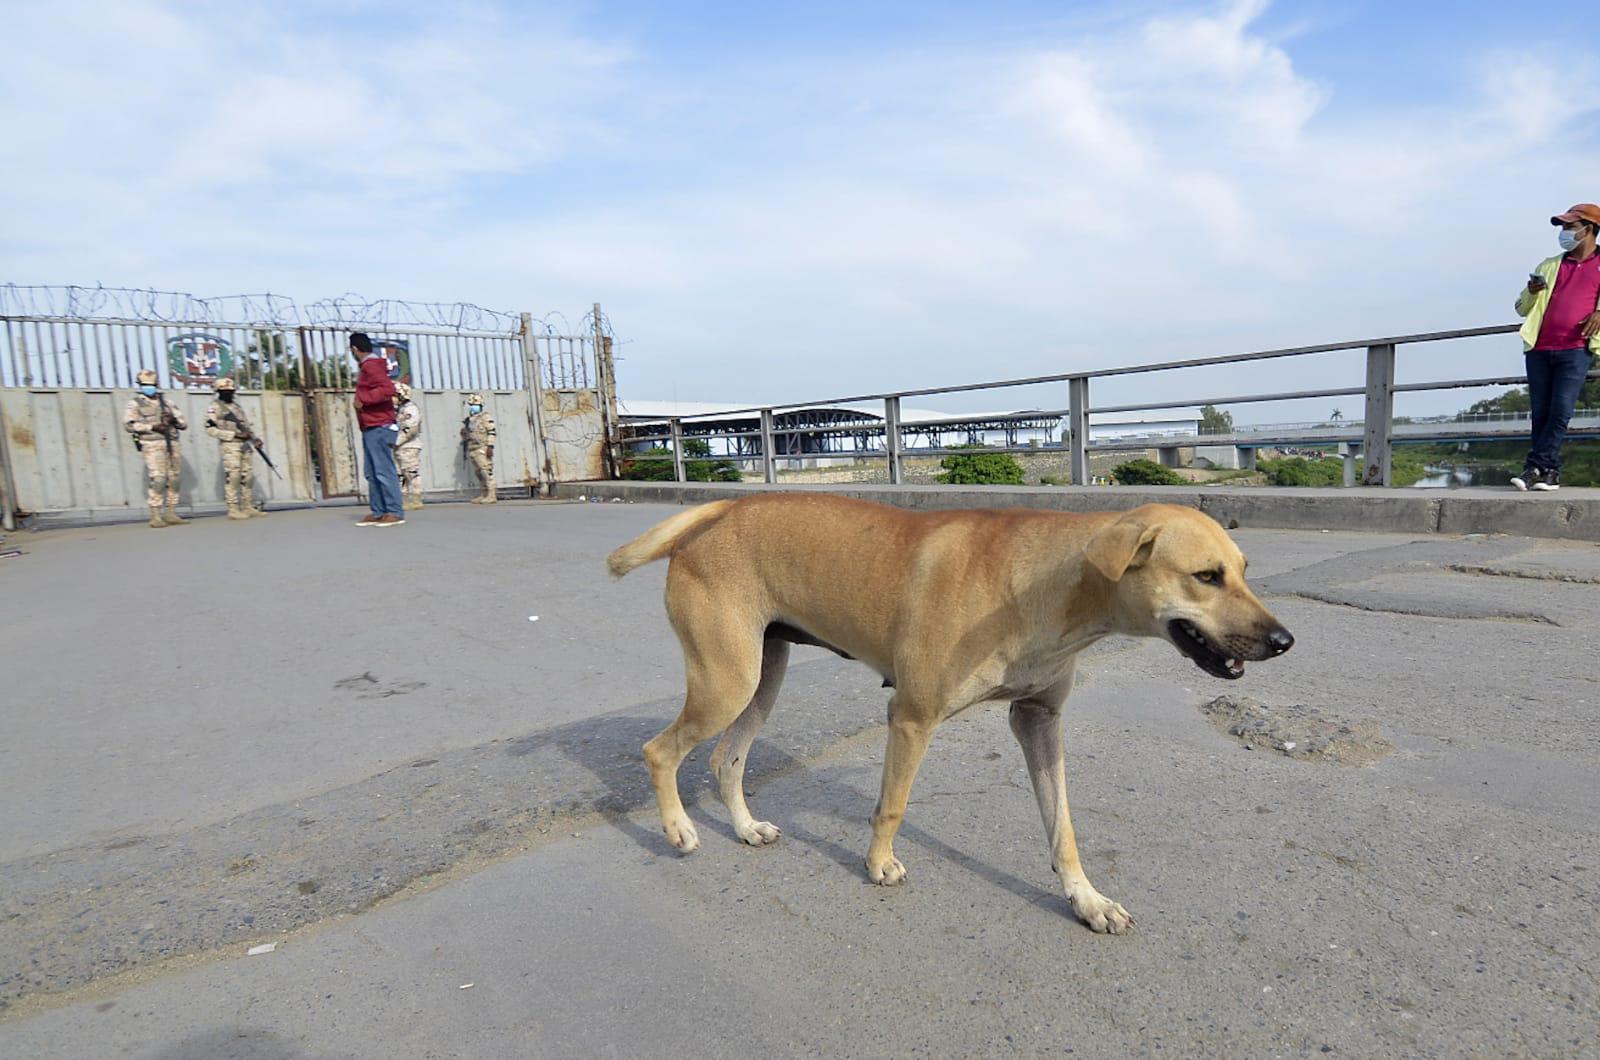 En el paso fronterizo de Dajabón un perro callejero aguarda el regreso de la corriente humana que suele transitar por ese puente internacional. (Foto: Aneudy Tavares / Diario Libre)